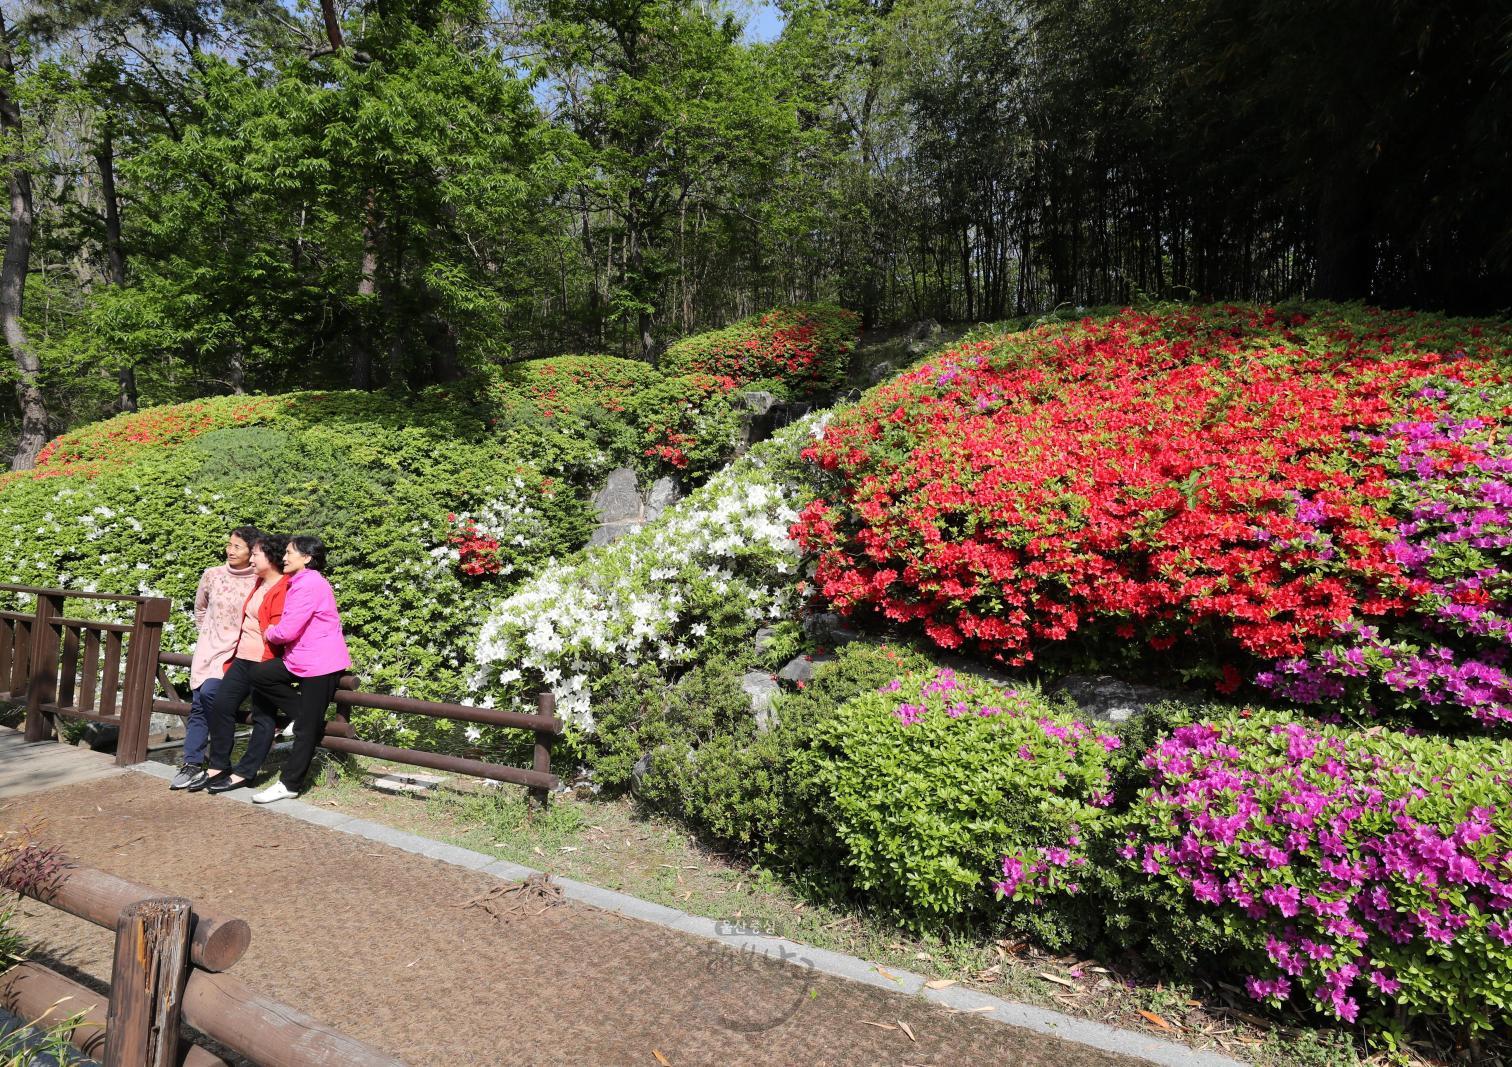 선암호수공원 벽천폭포 철쭉꽃 - 울남9경 의 사진